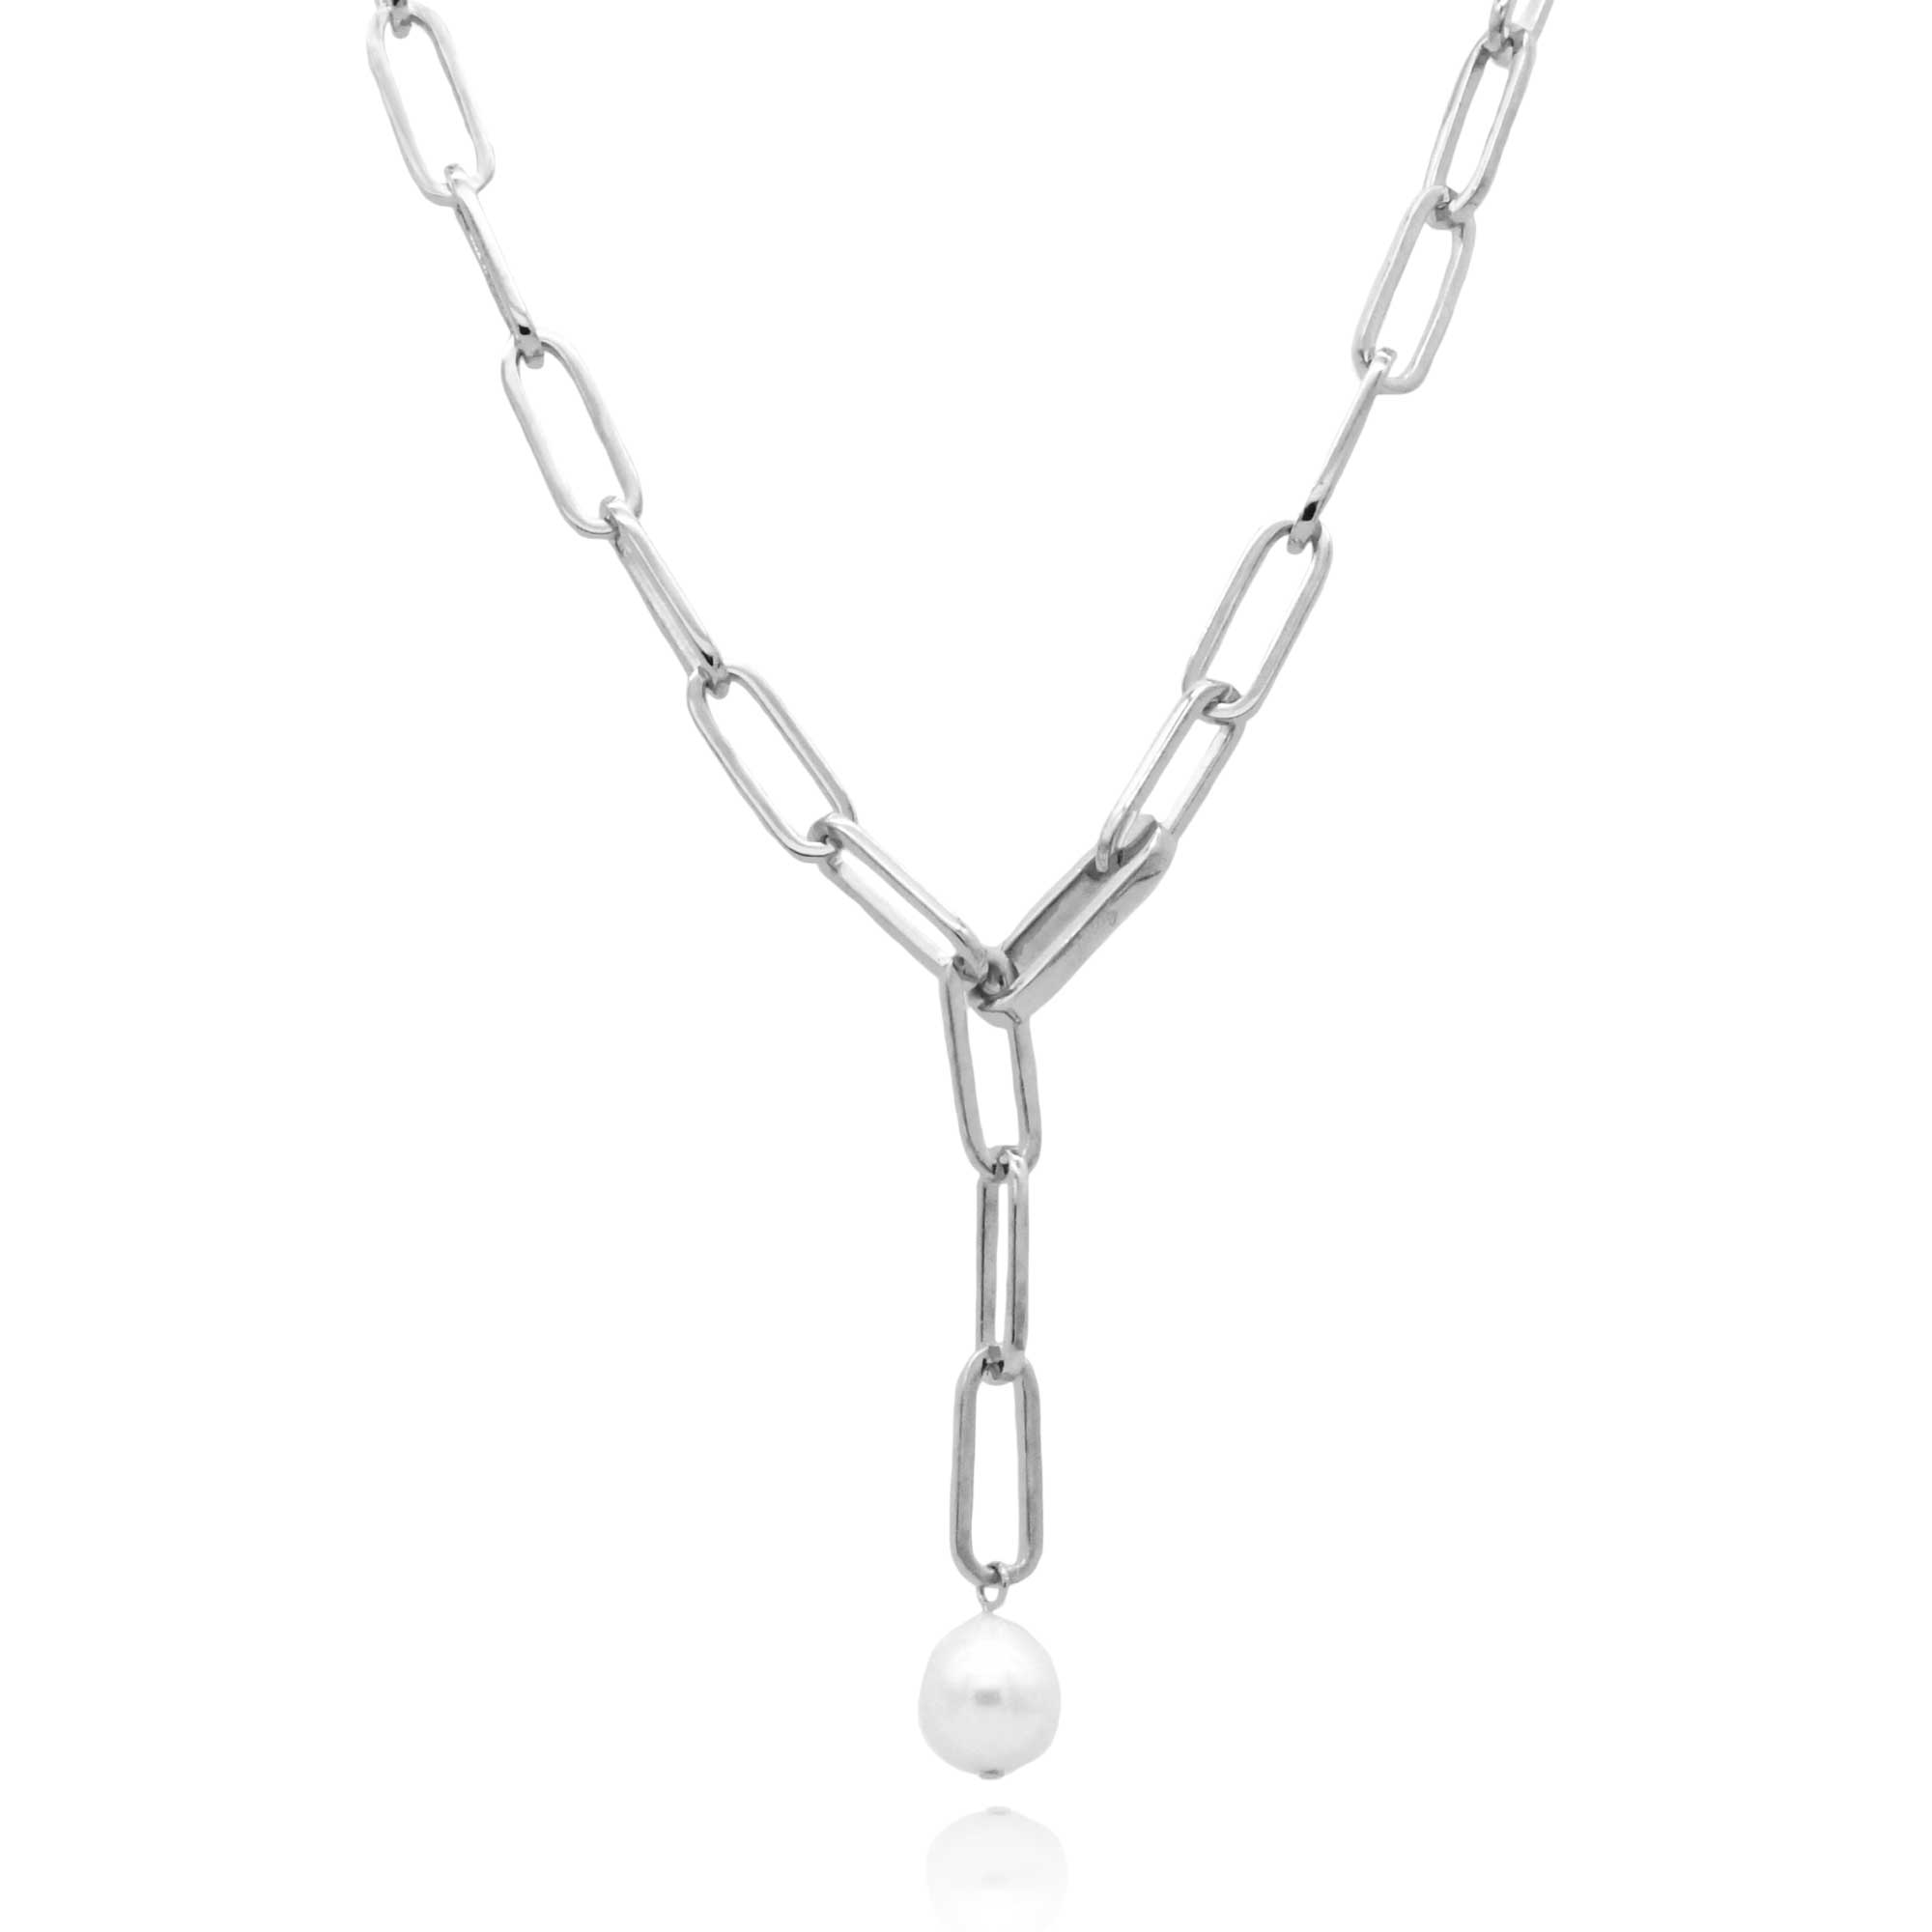 Trésor baroque pearl necklace